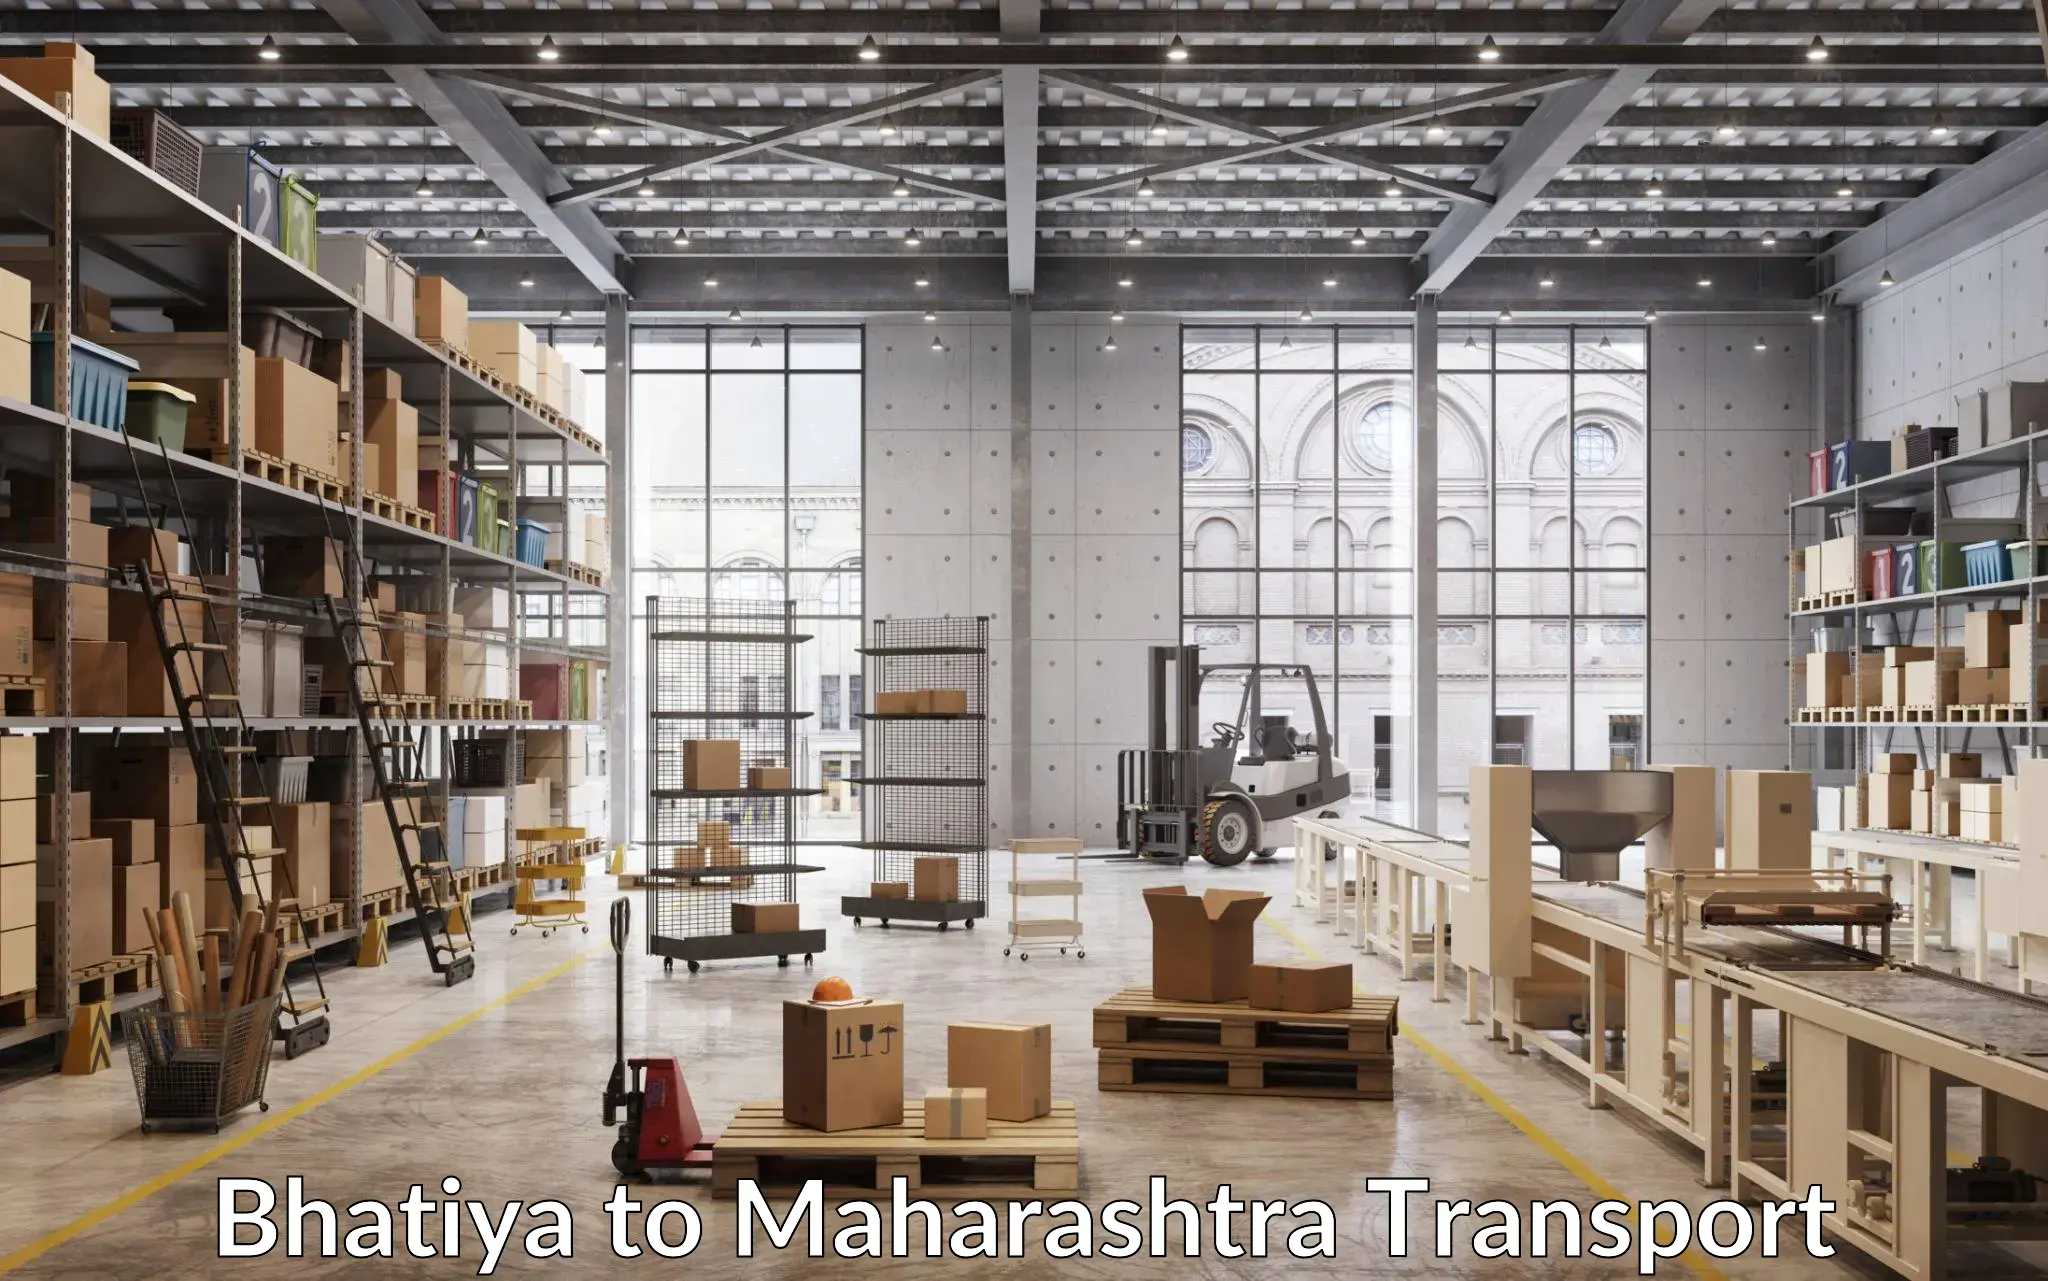 Sending bike to another city in Bhatiya to Maharashtra